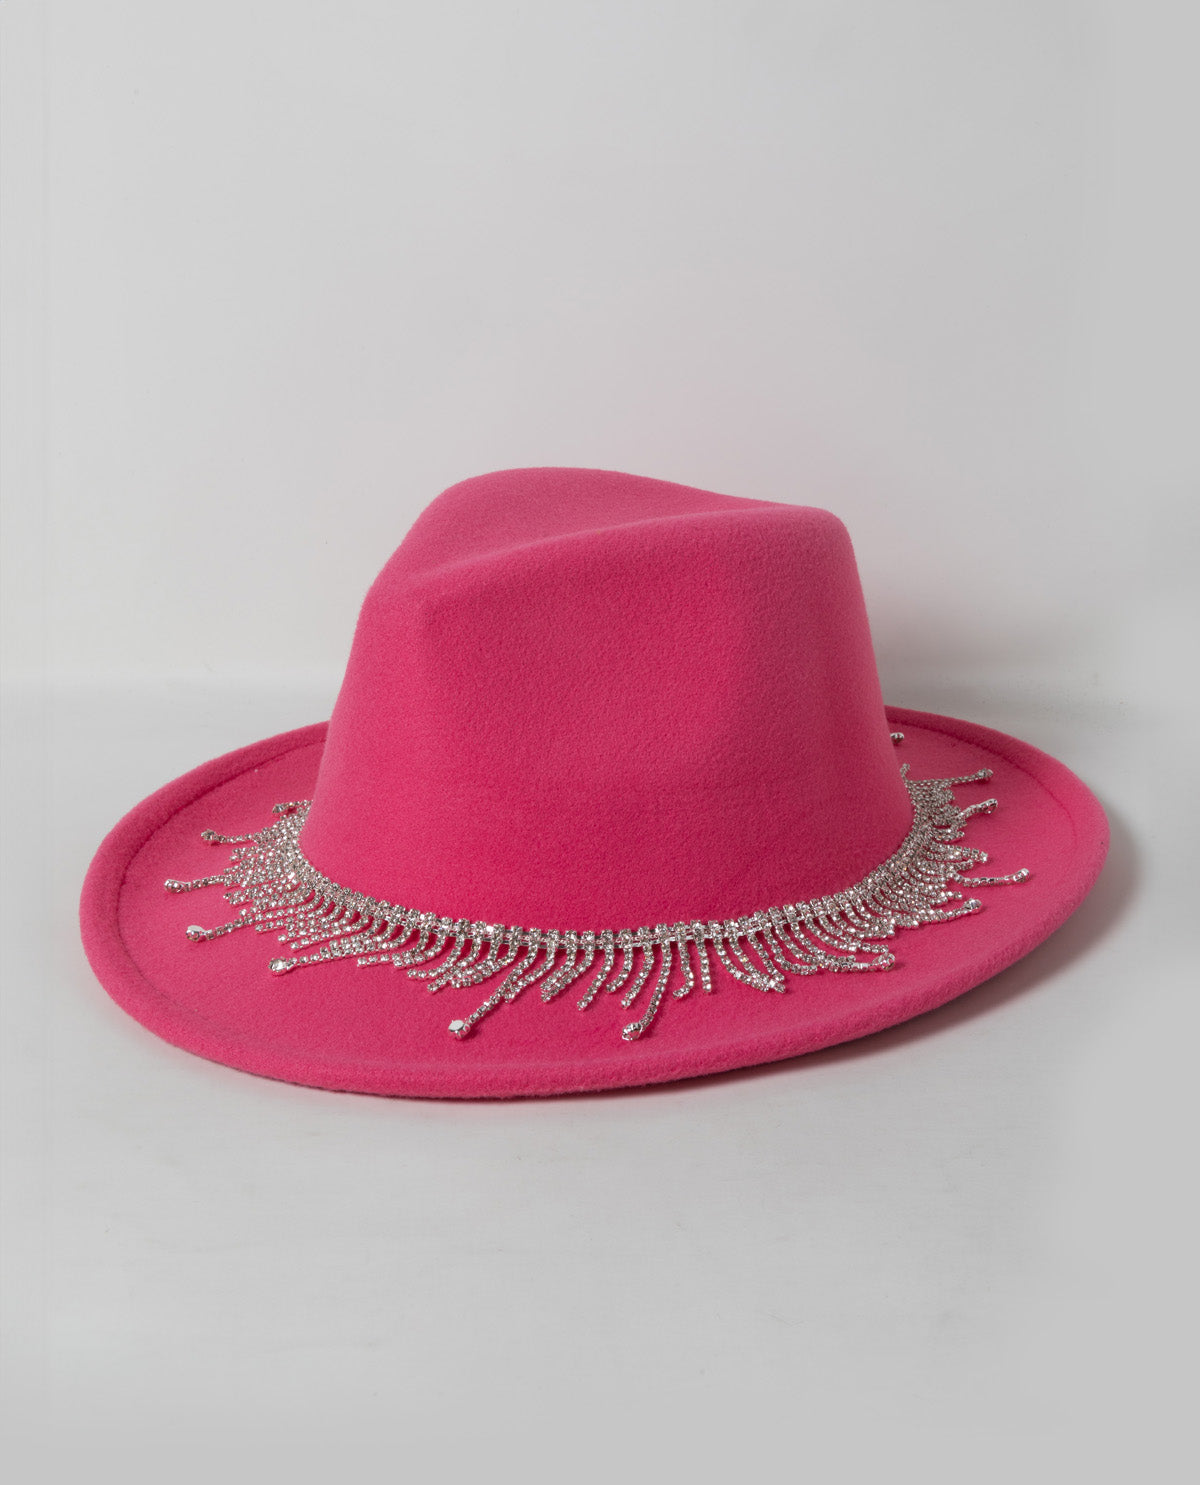 Rhinestone Cowgirl Wide Brim Hat